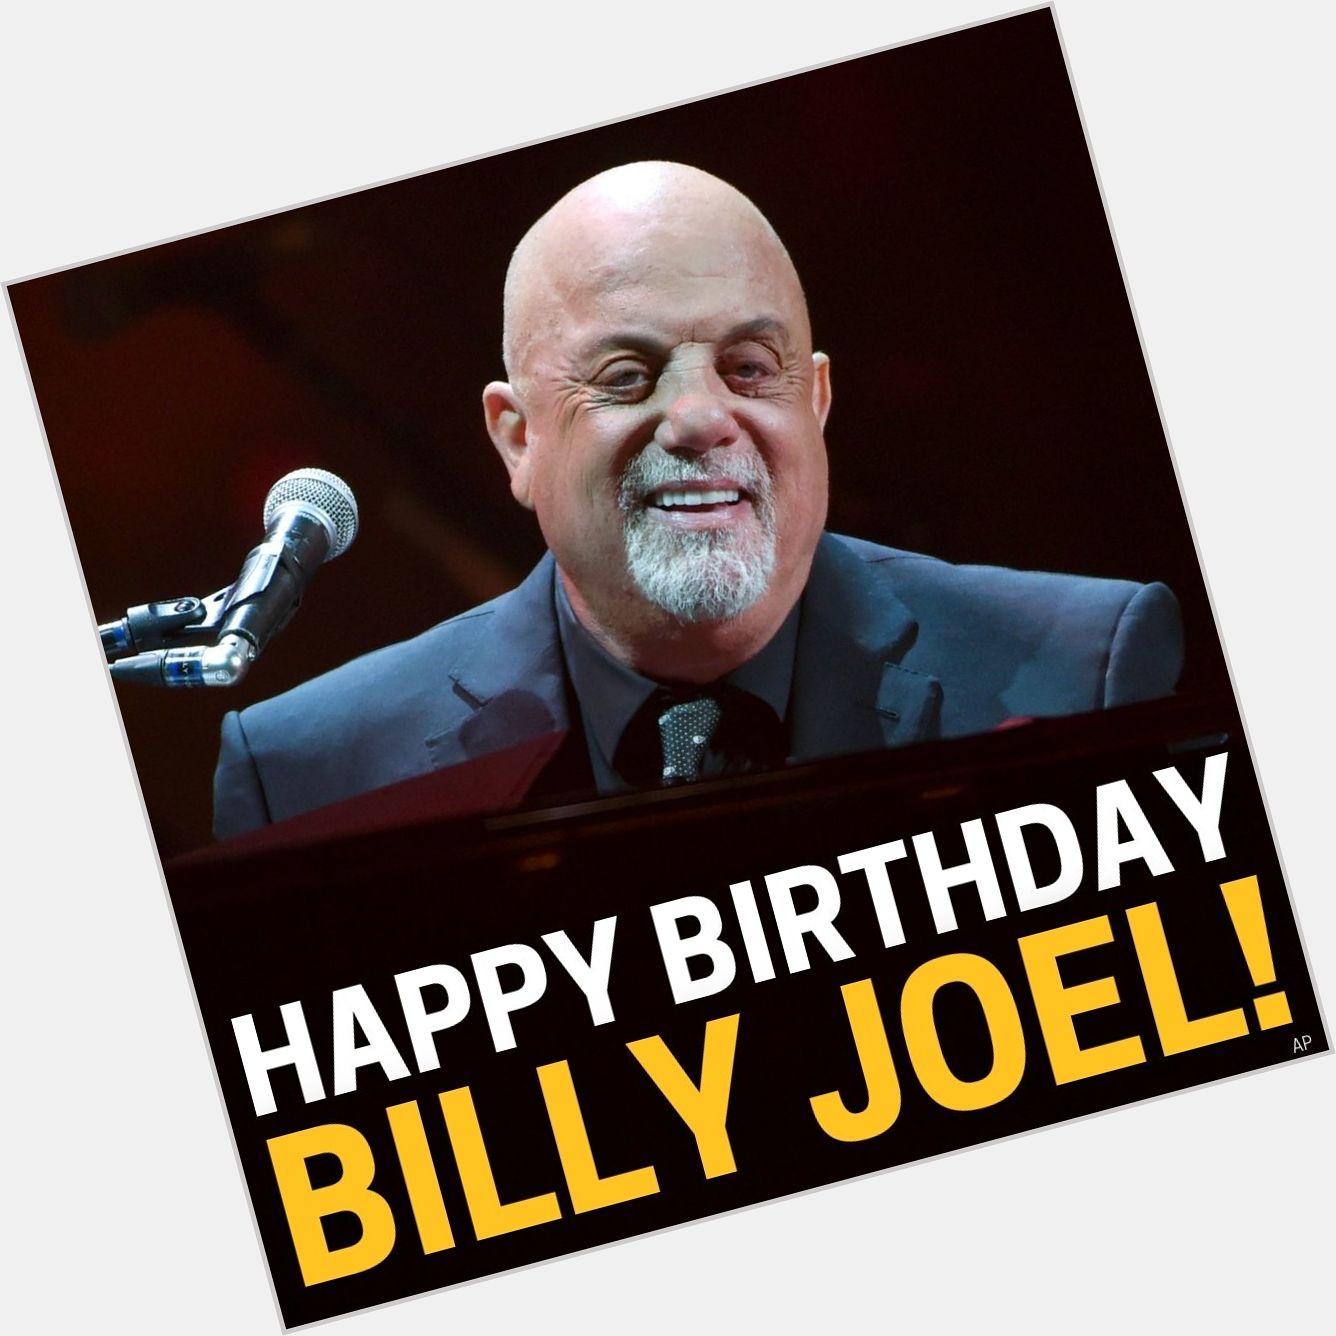 Happy birthday, Billy Joel! 